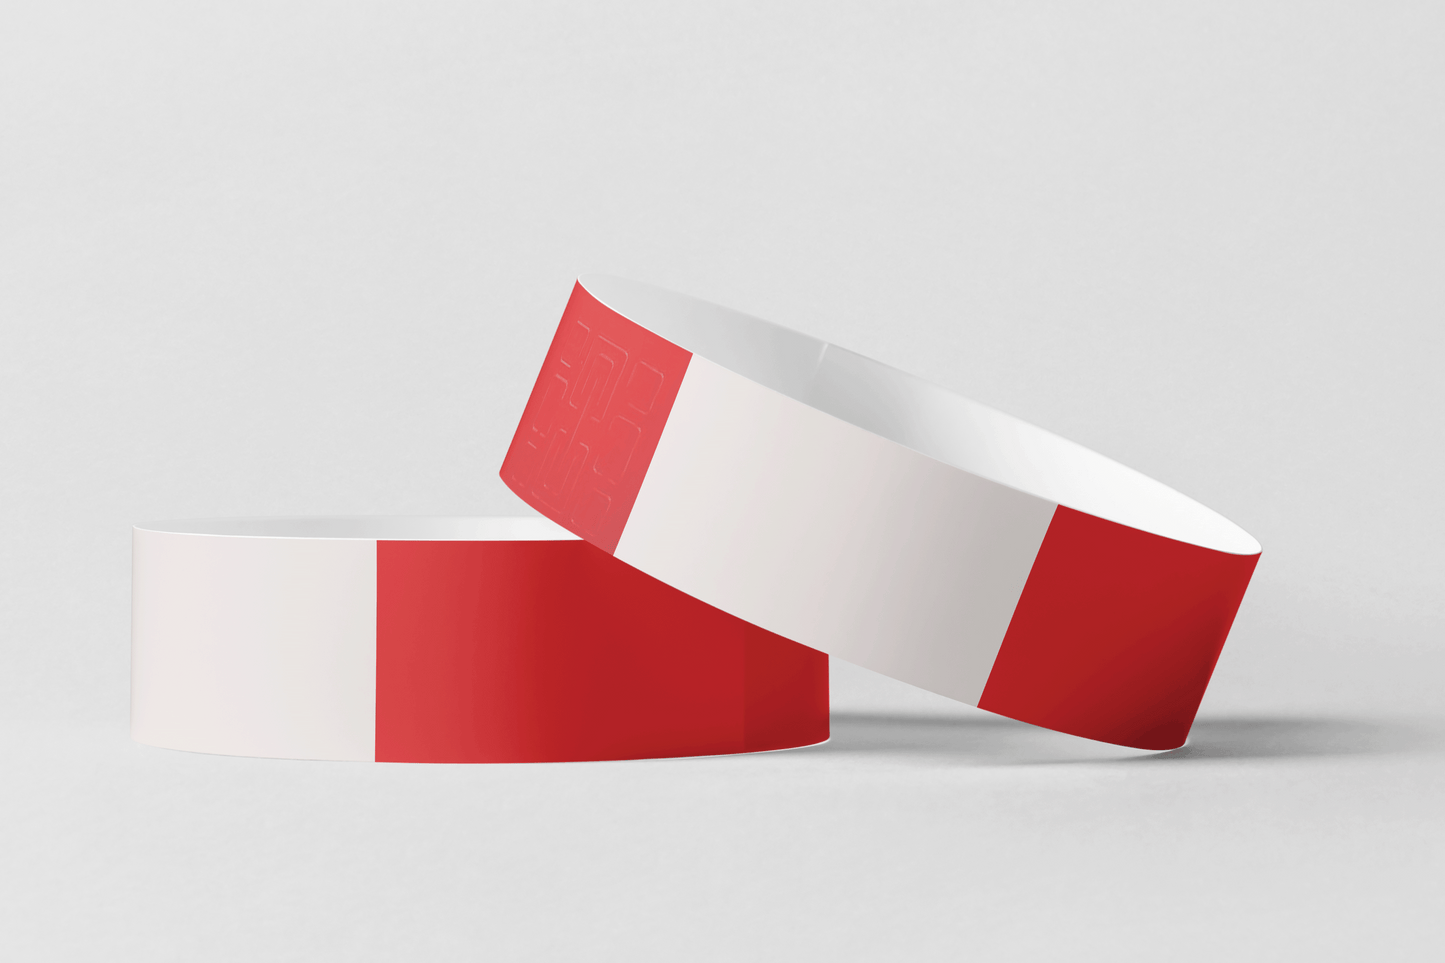 Et par røde og hvite armbånd med Armbånd termisk - Print Selv av JM Band NO, på hvit bakgrunn.